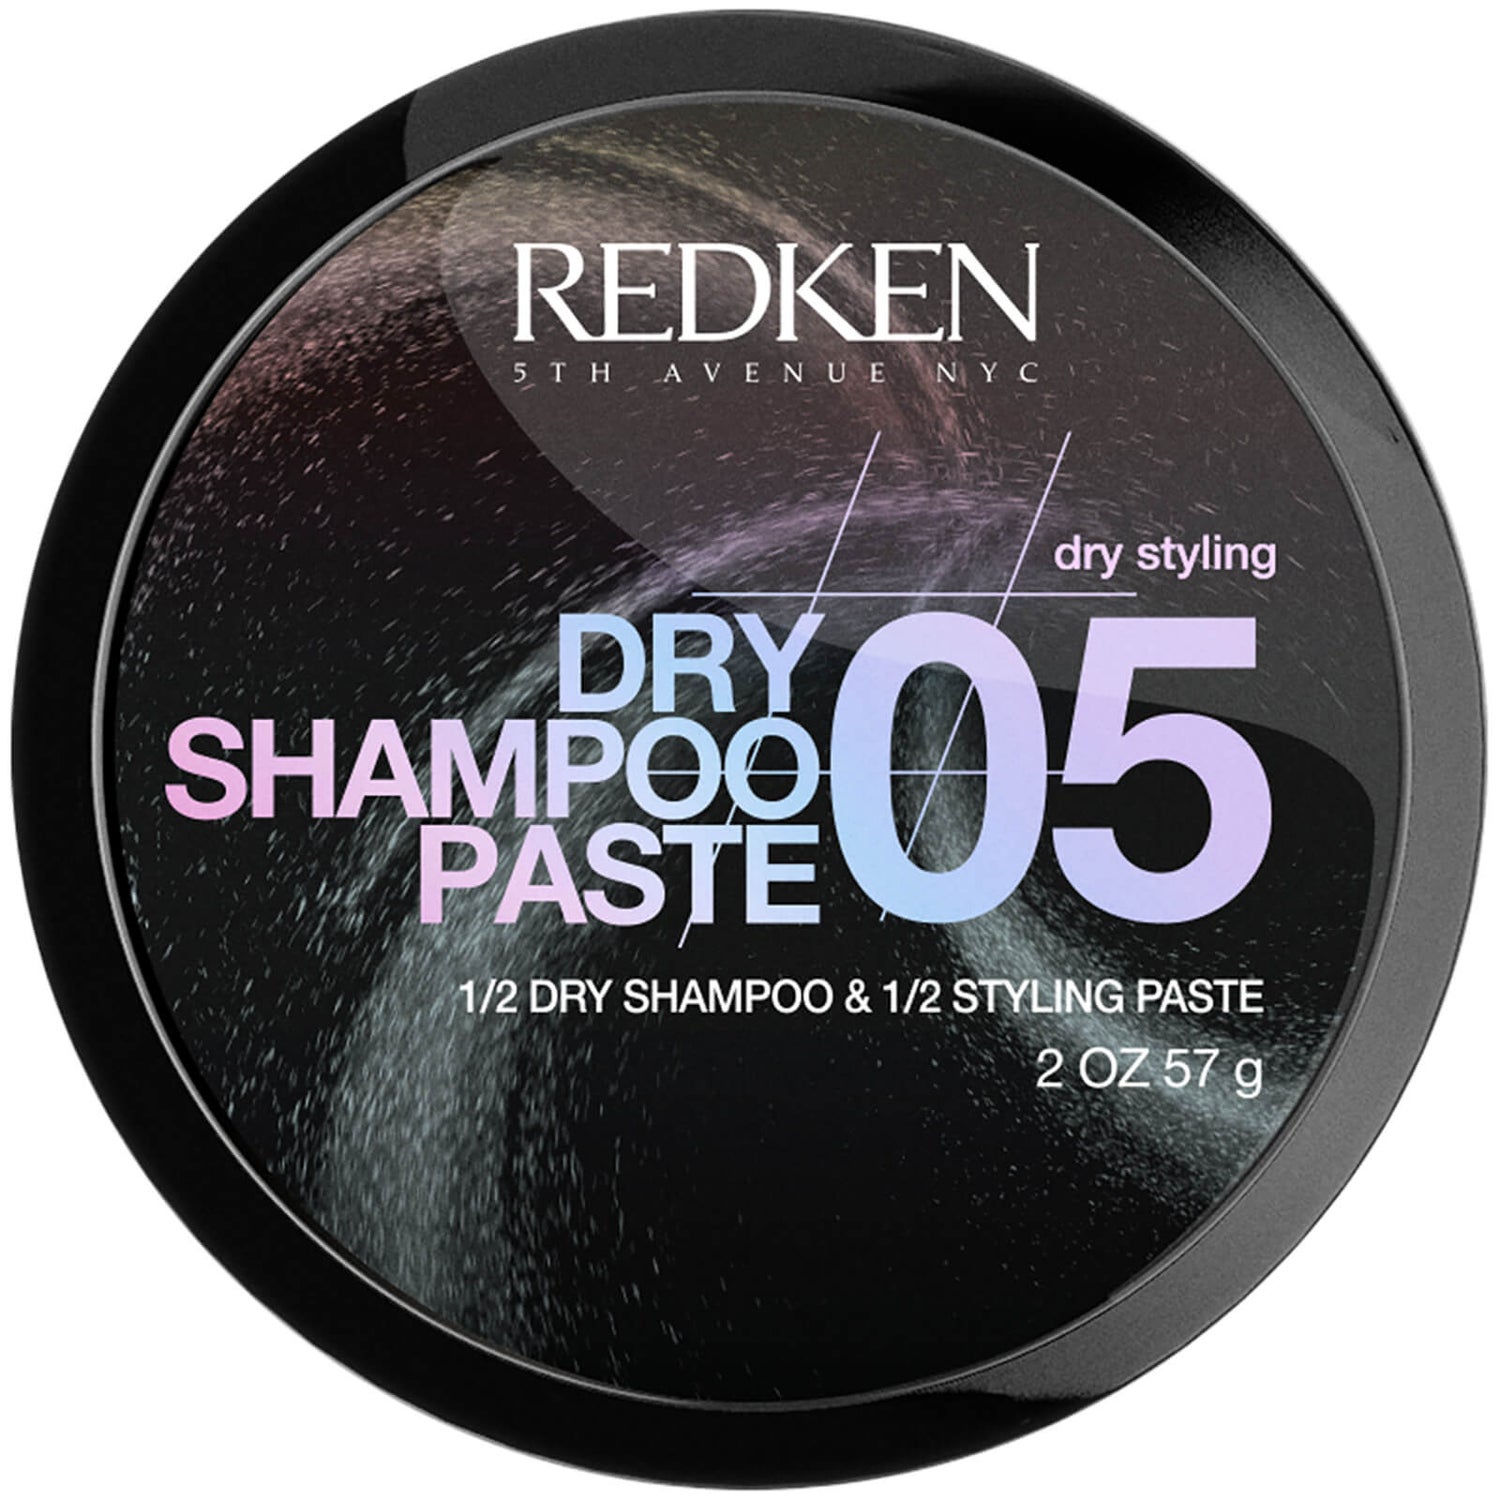 Redken Dry Shampoo Paste - lookfantastic